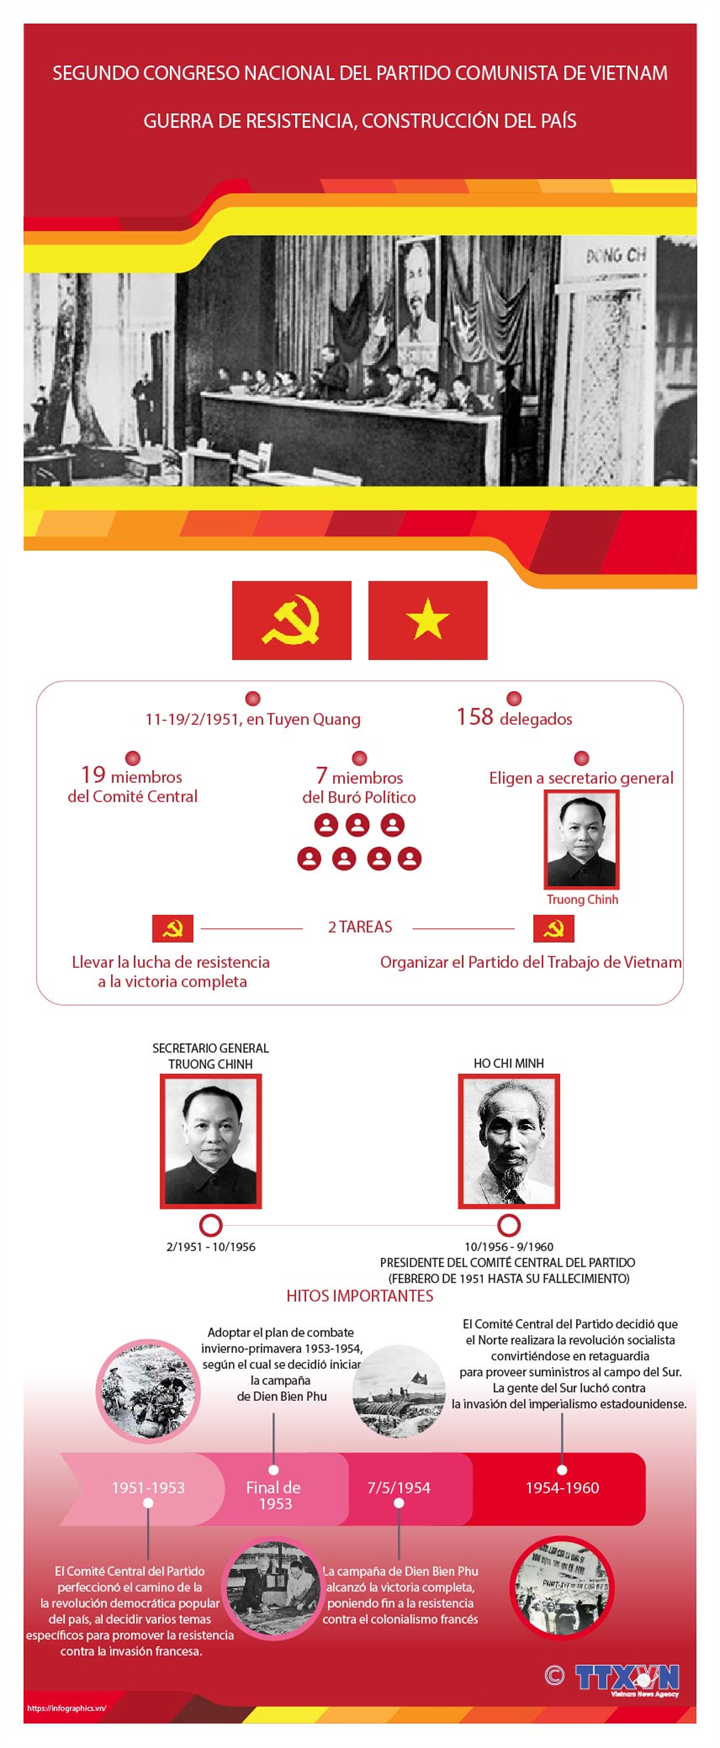 Segundo Congreso Nacional del Partido Comunista de Vietnam: Liderar la resistencia hasta vencer